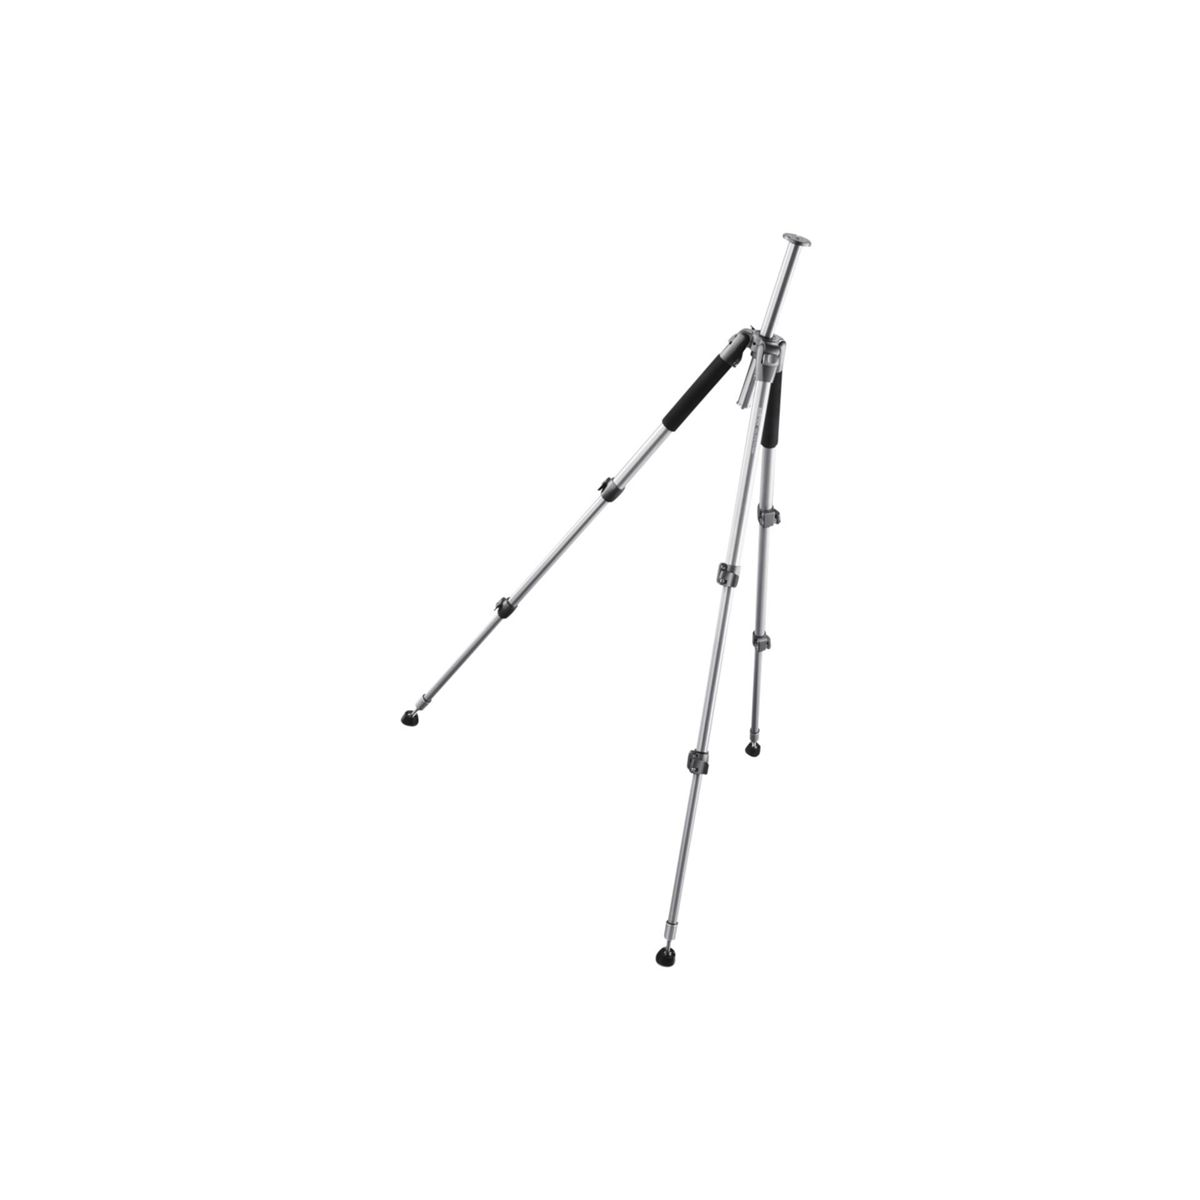 Pro-Stativ Höhe schwarz Dreibeinstativ, silber, 156cm WAL-6702 bis / WALIMEX offen 156,0 cm